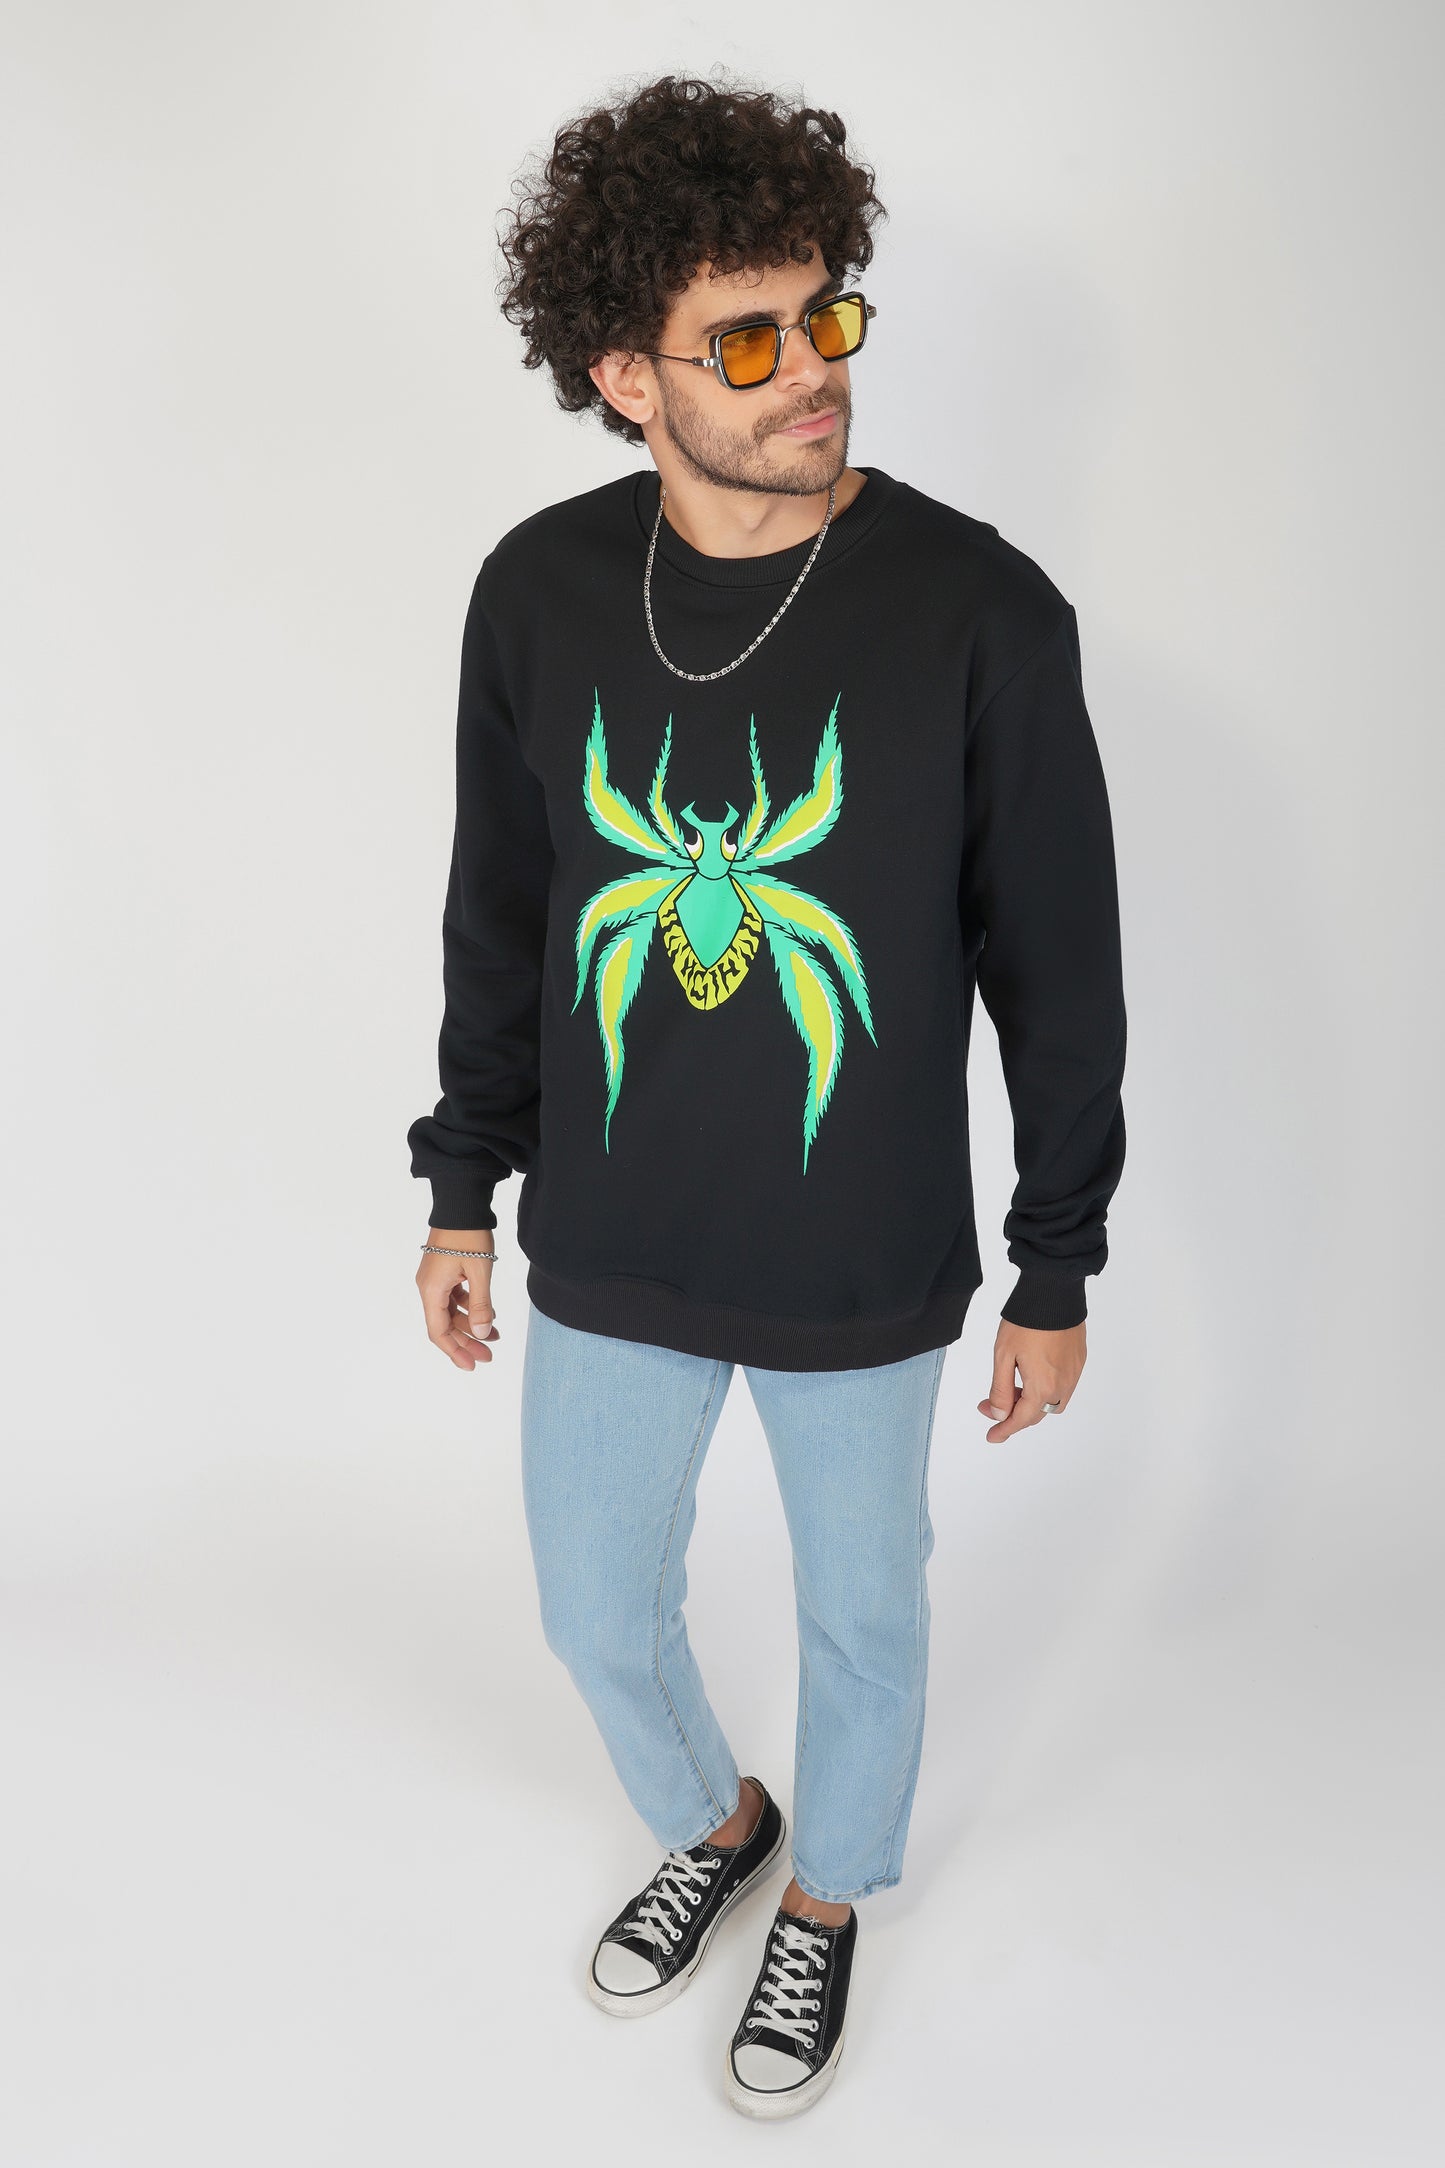 HGIH Spider Graphic Black Sweatshirt